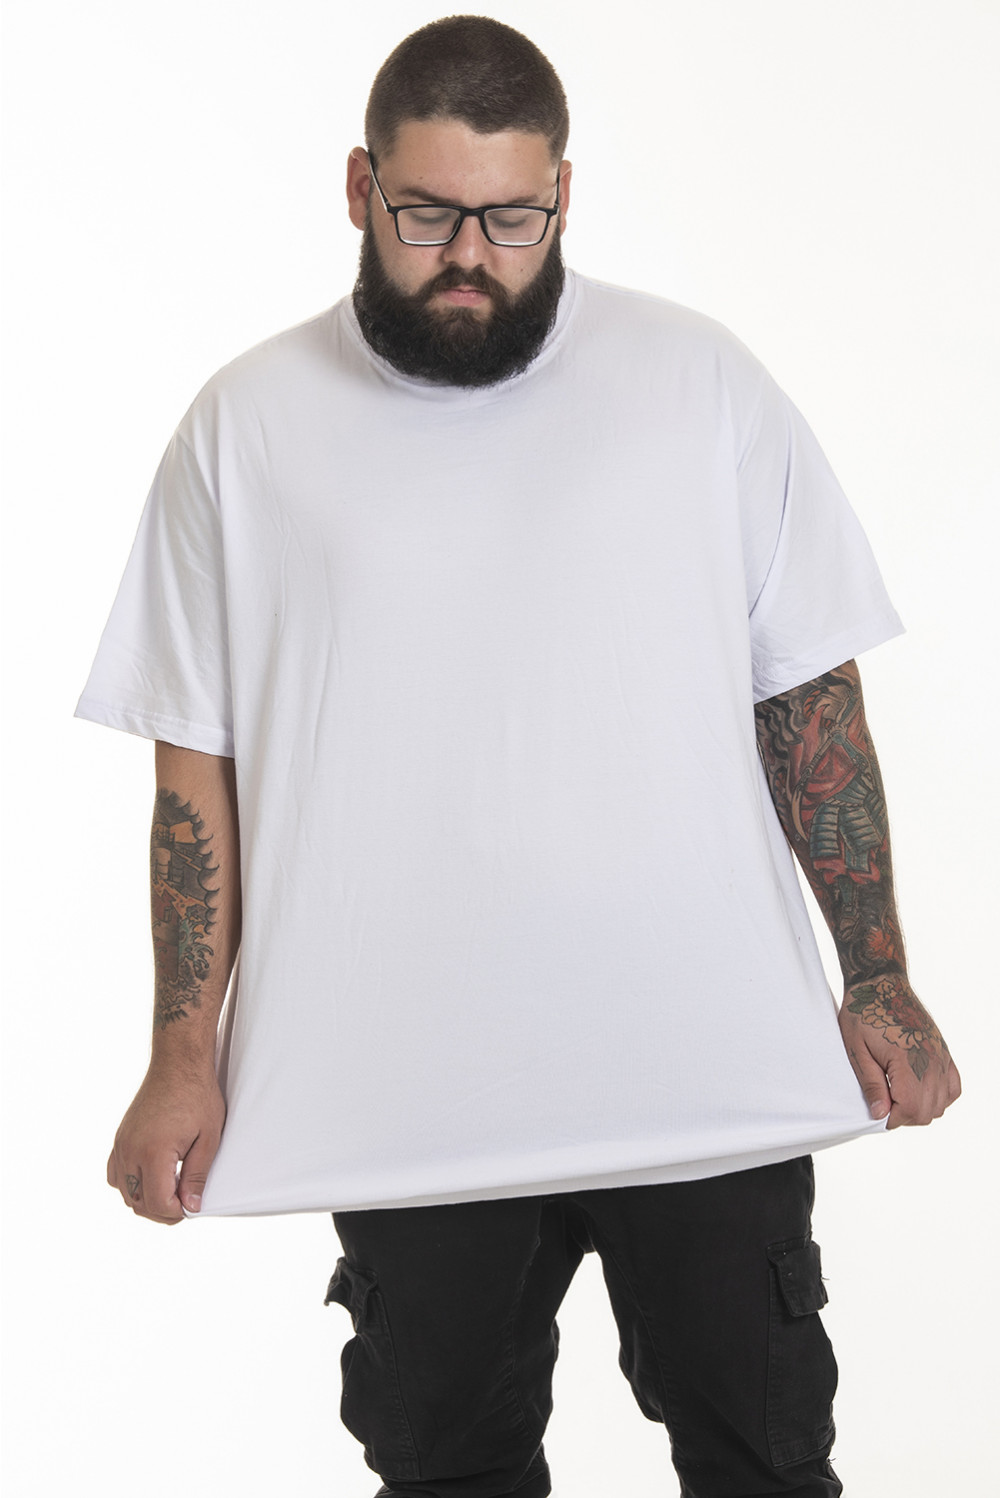 Pack de 3 Camisetas (regulares) Korova Básicas Brancas